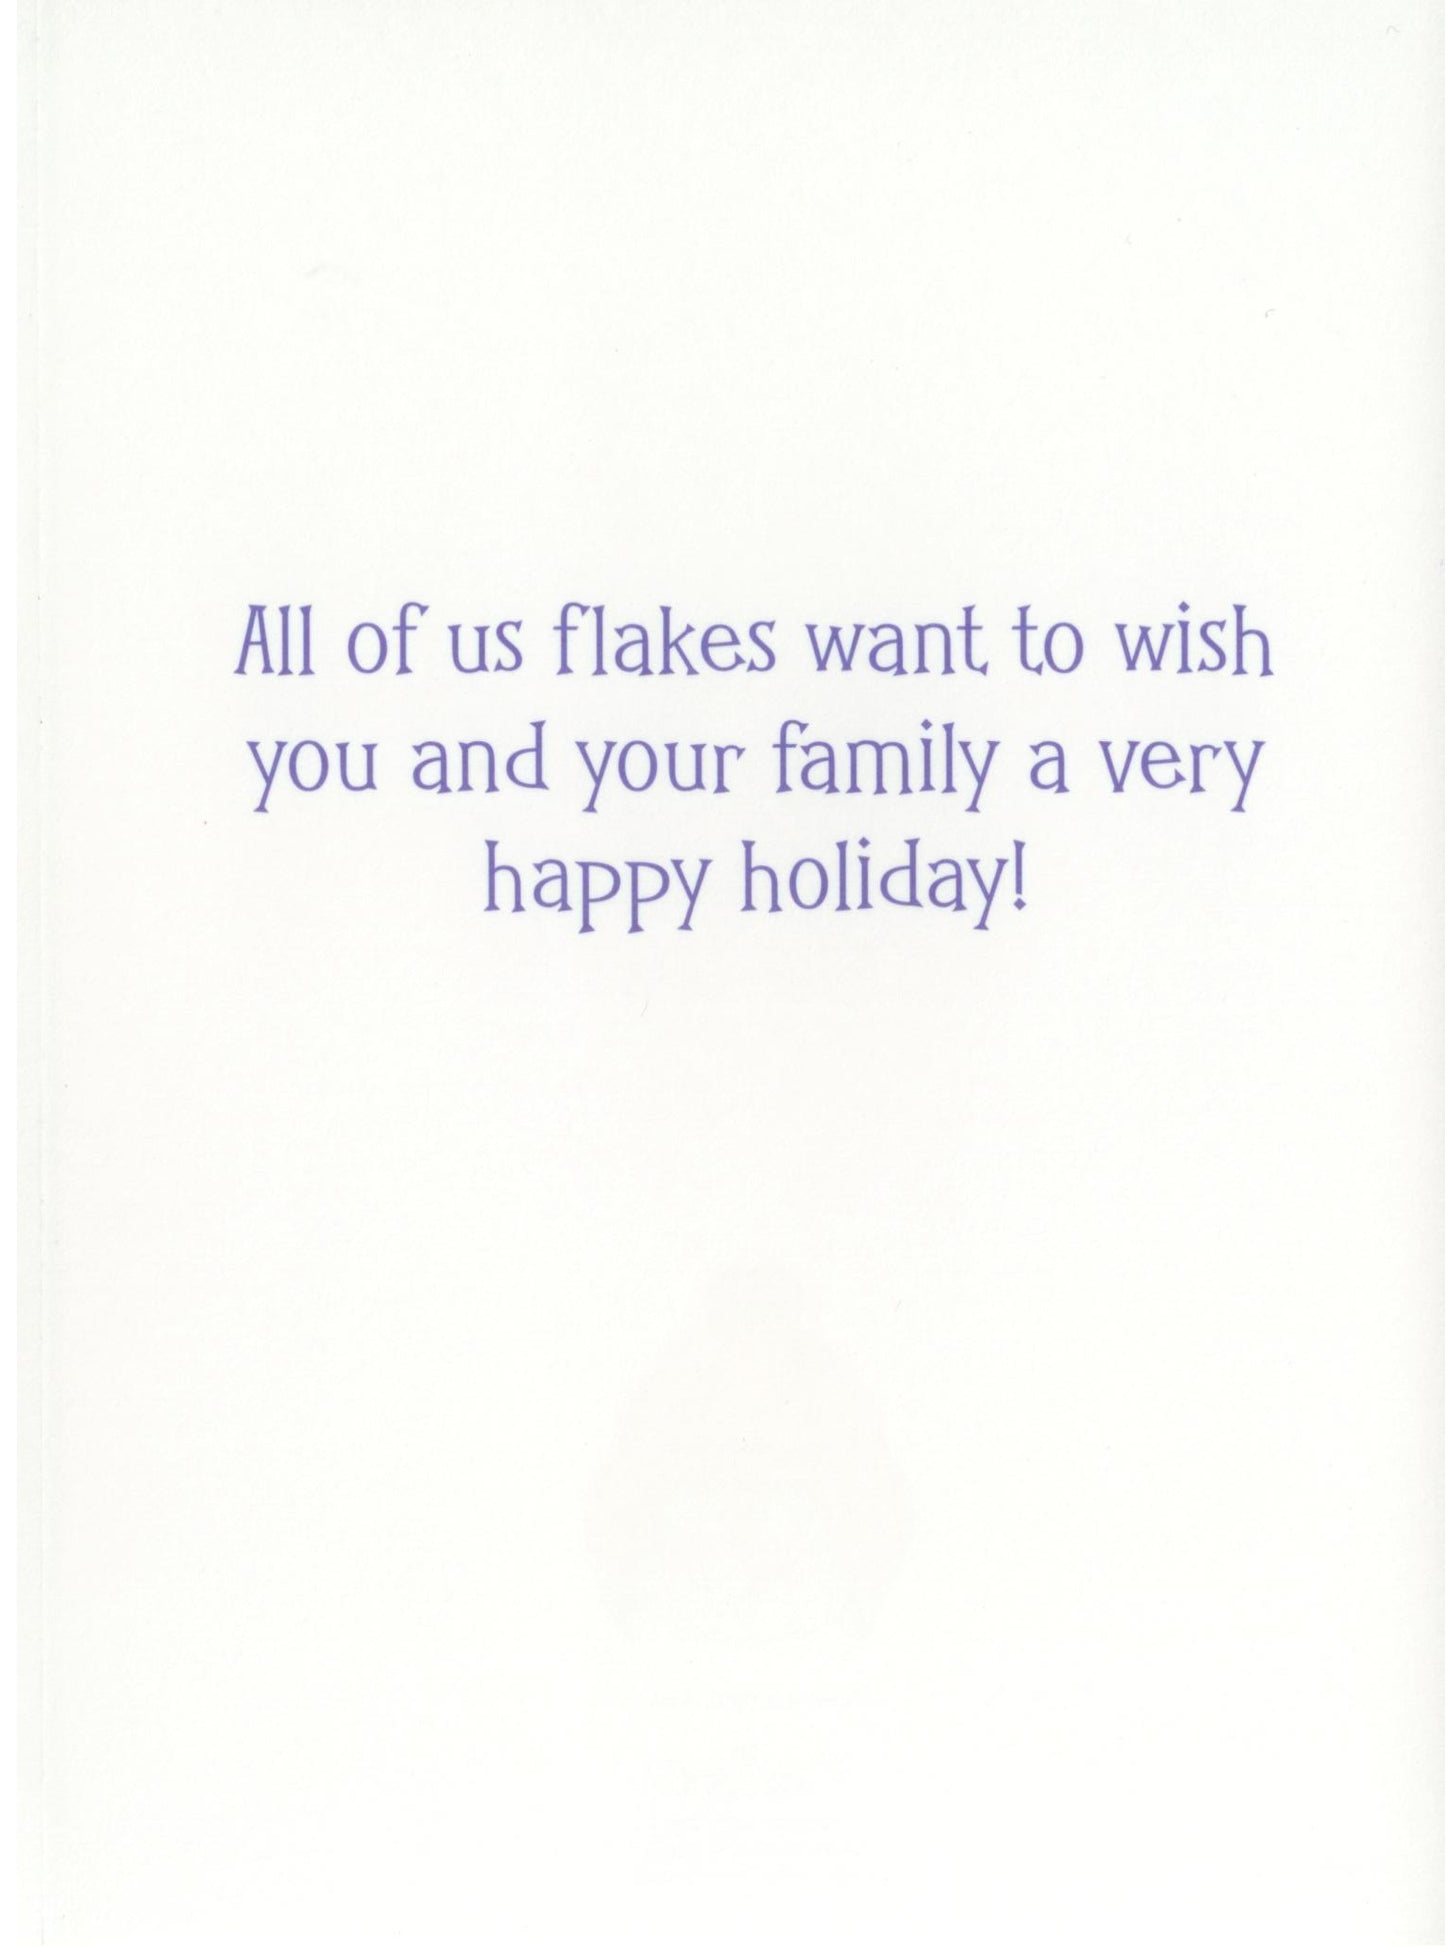 Holiday Card